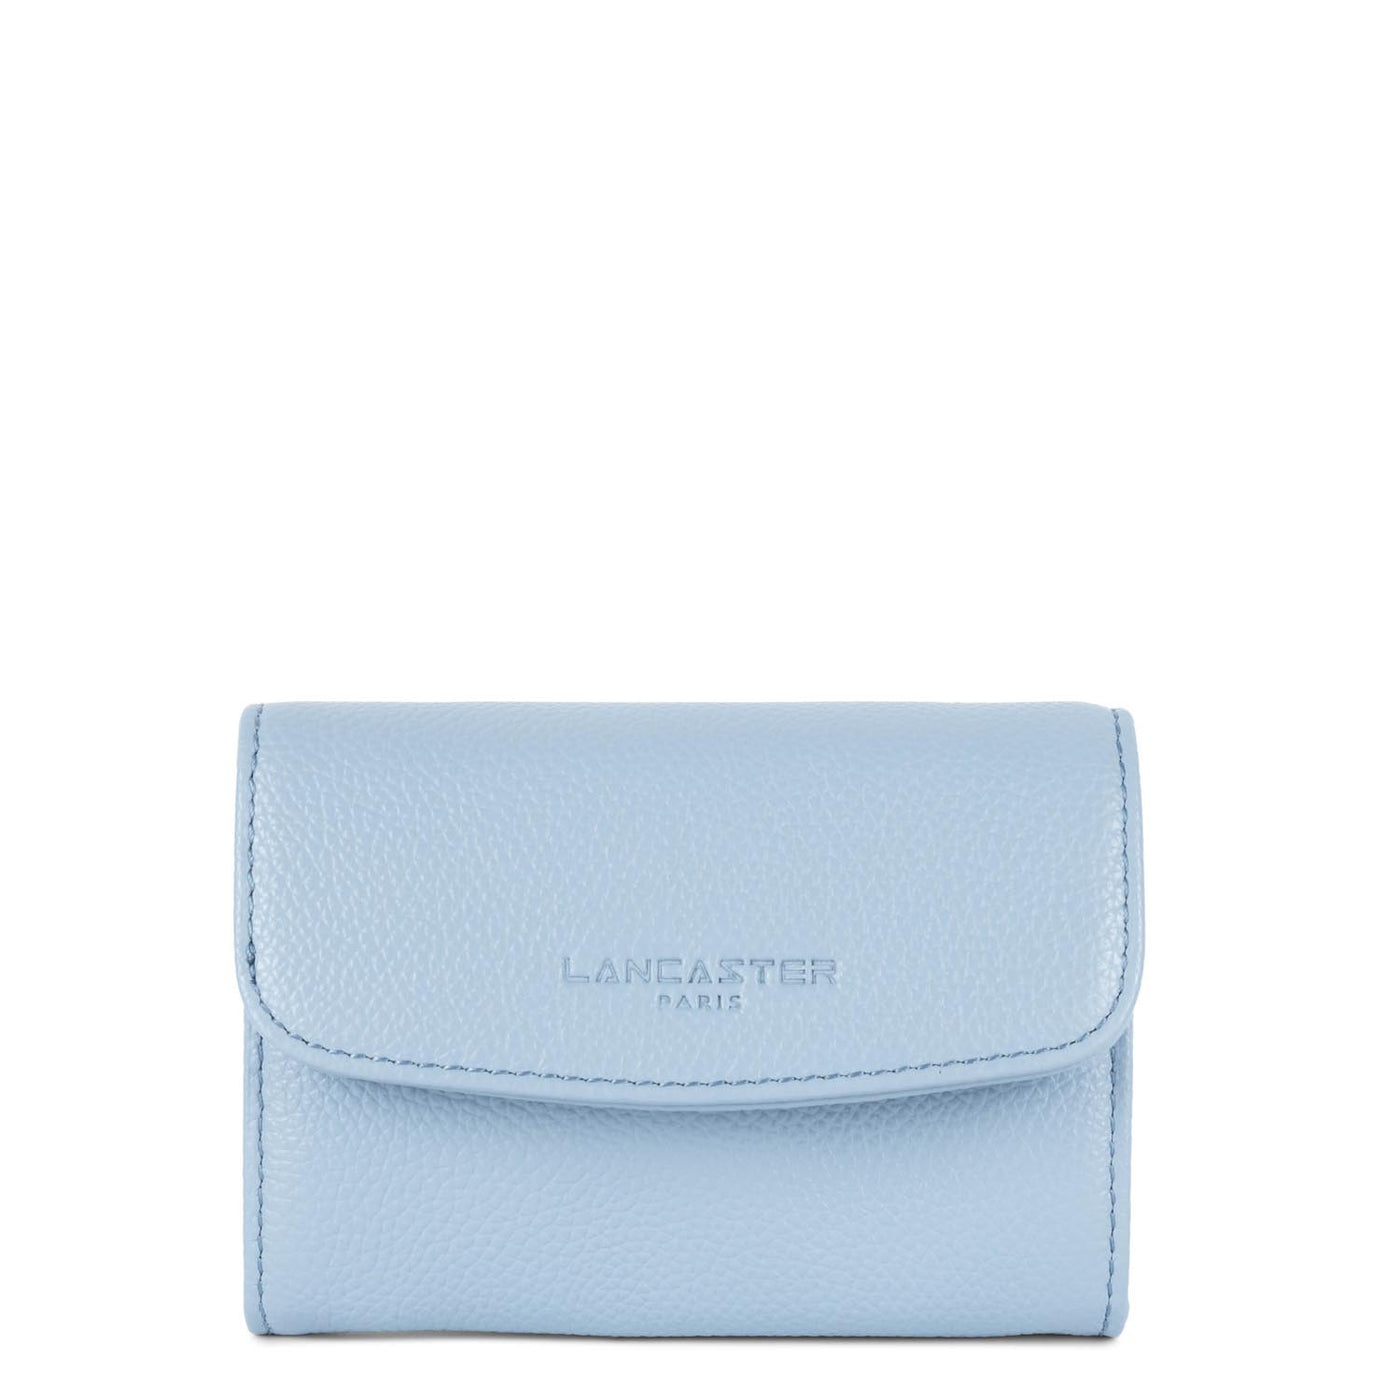 wallet - foulonné pm #couleur_bleu-ciel